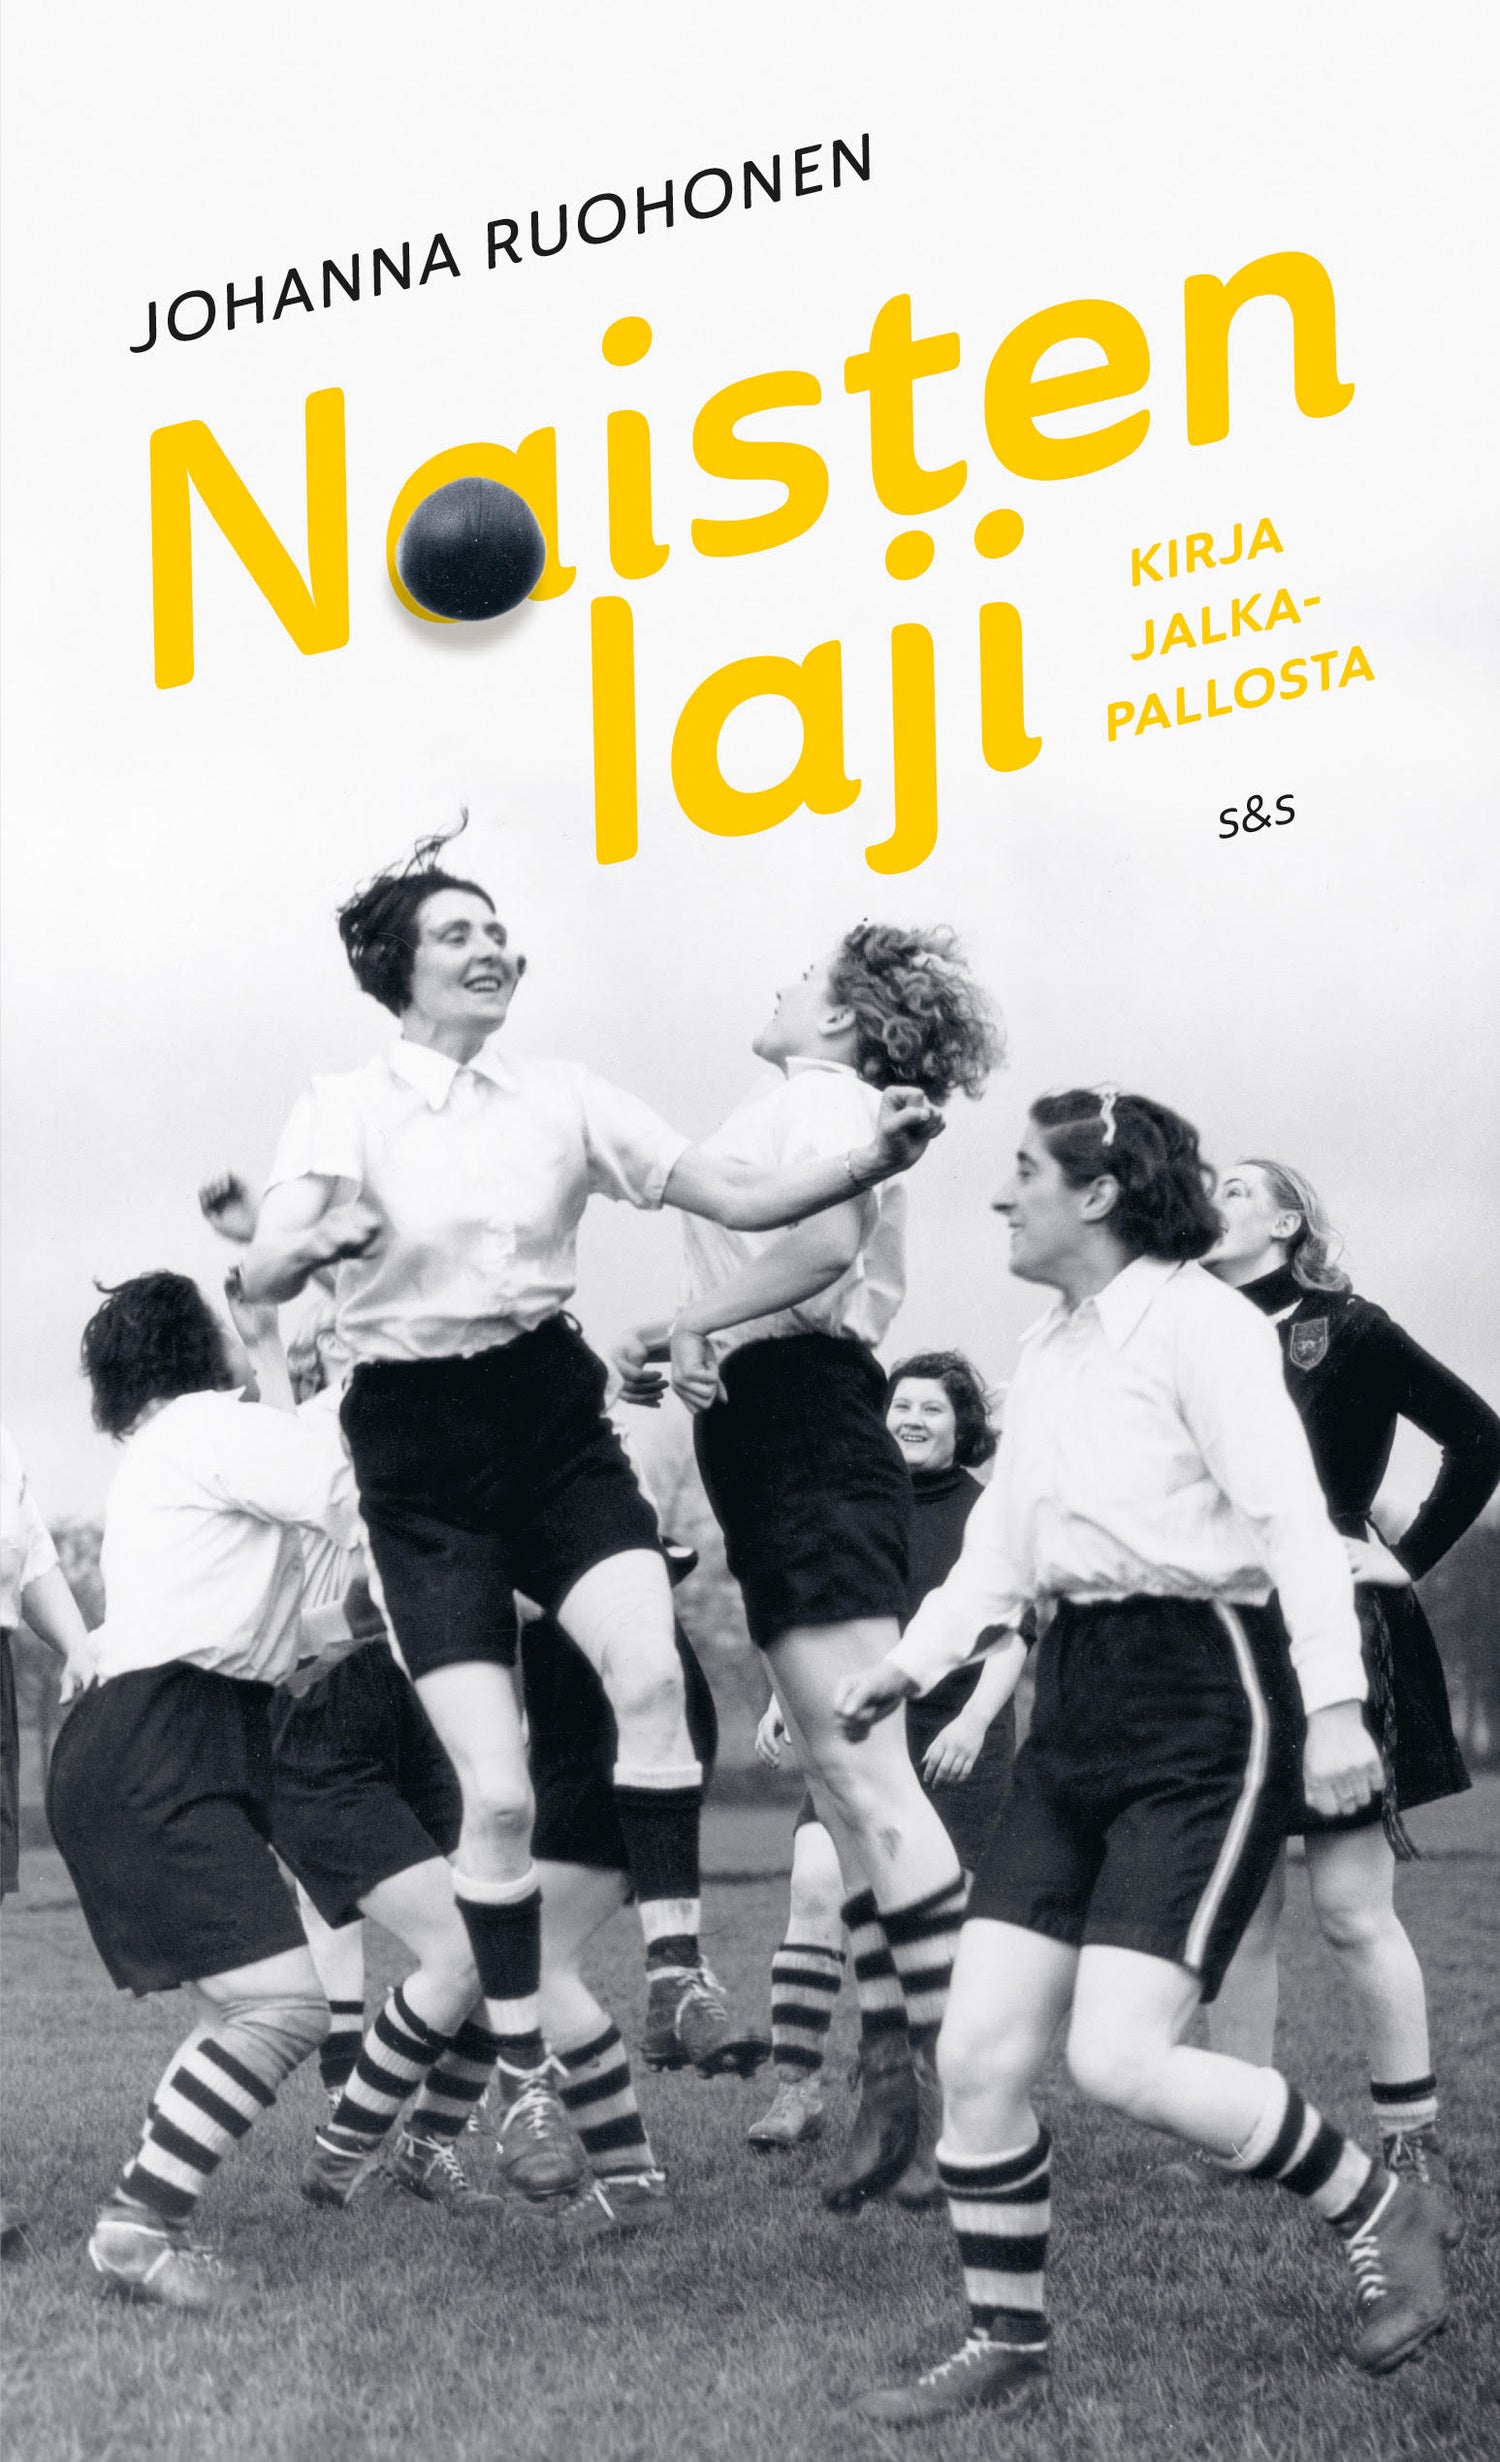 Women's Sport - Book about Football